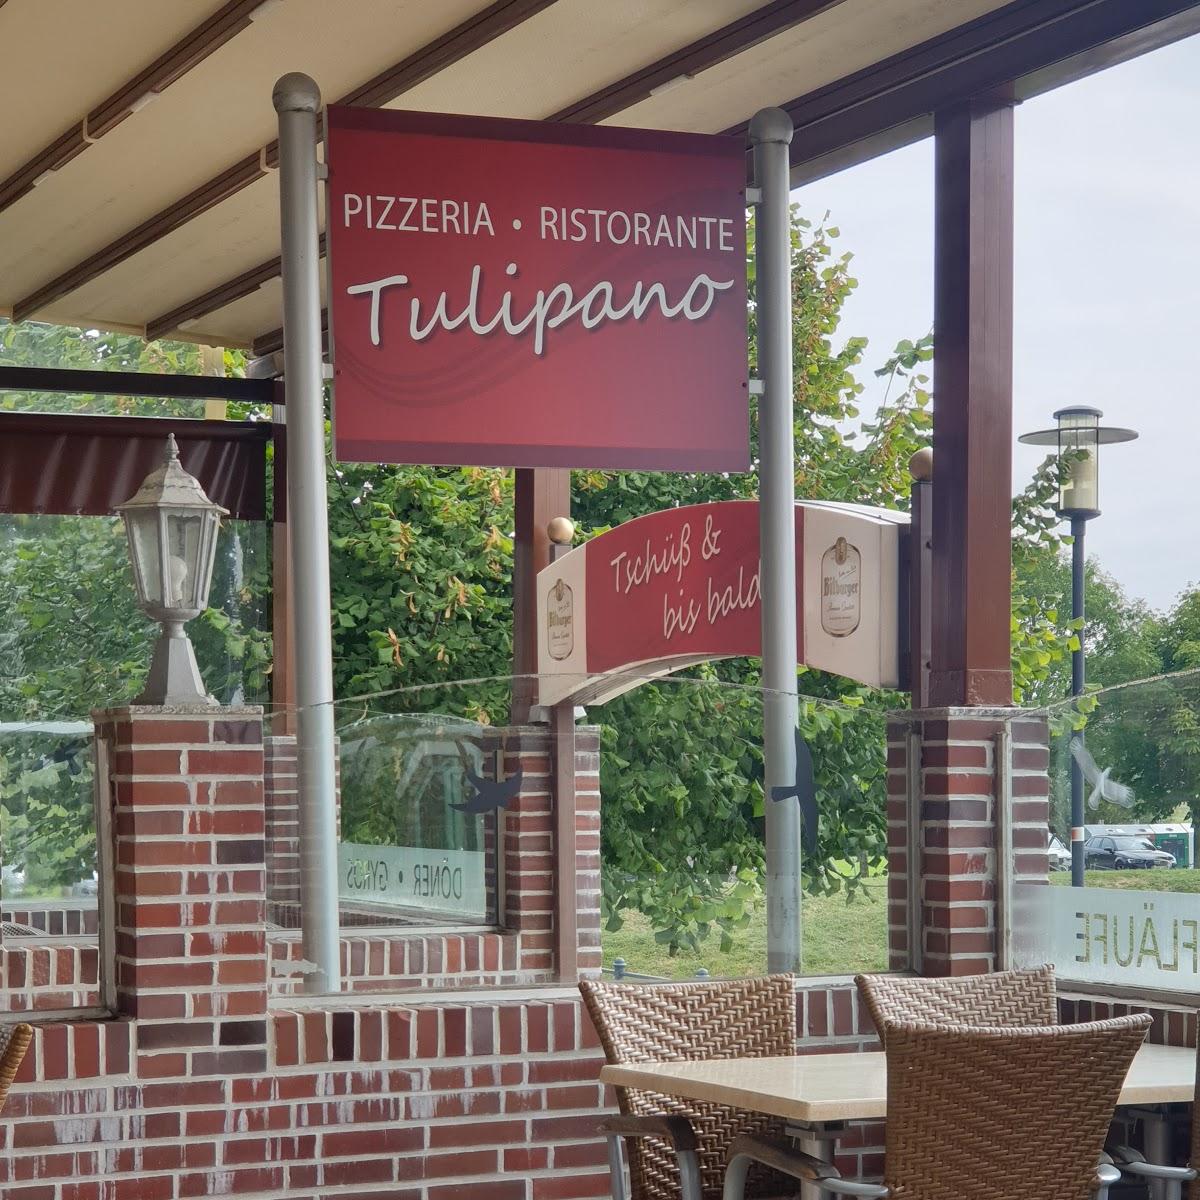 Restaurant "Pizzeria & Ristorante Tulipano" in Dornum